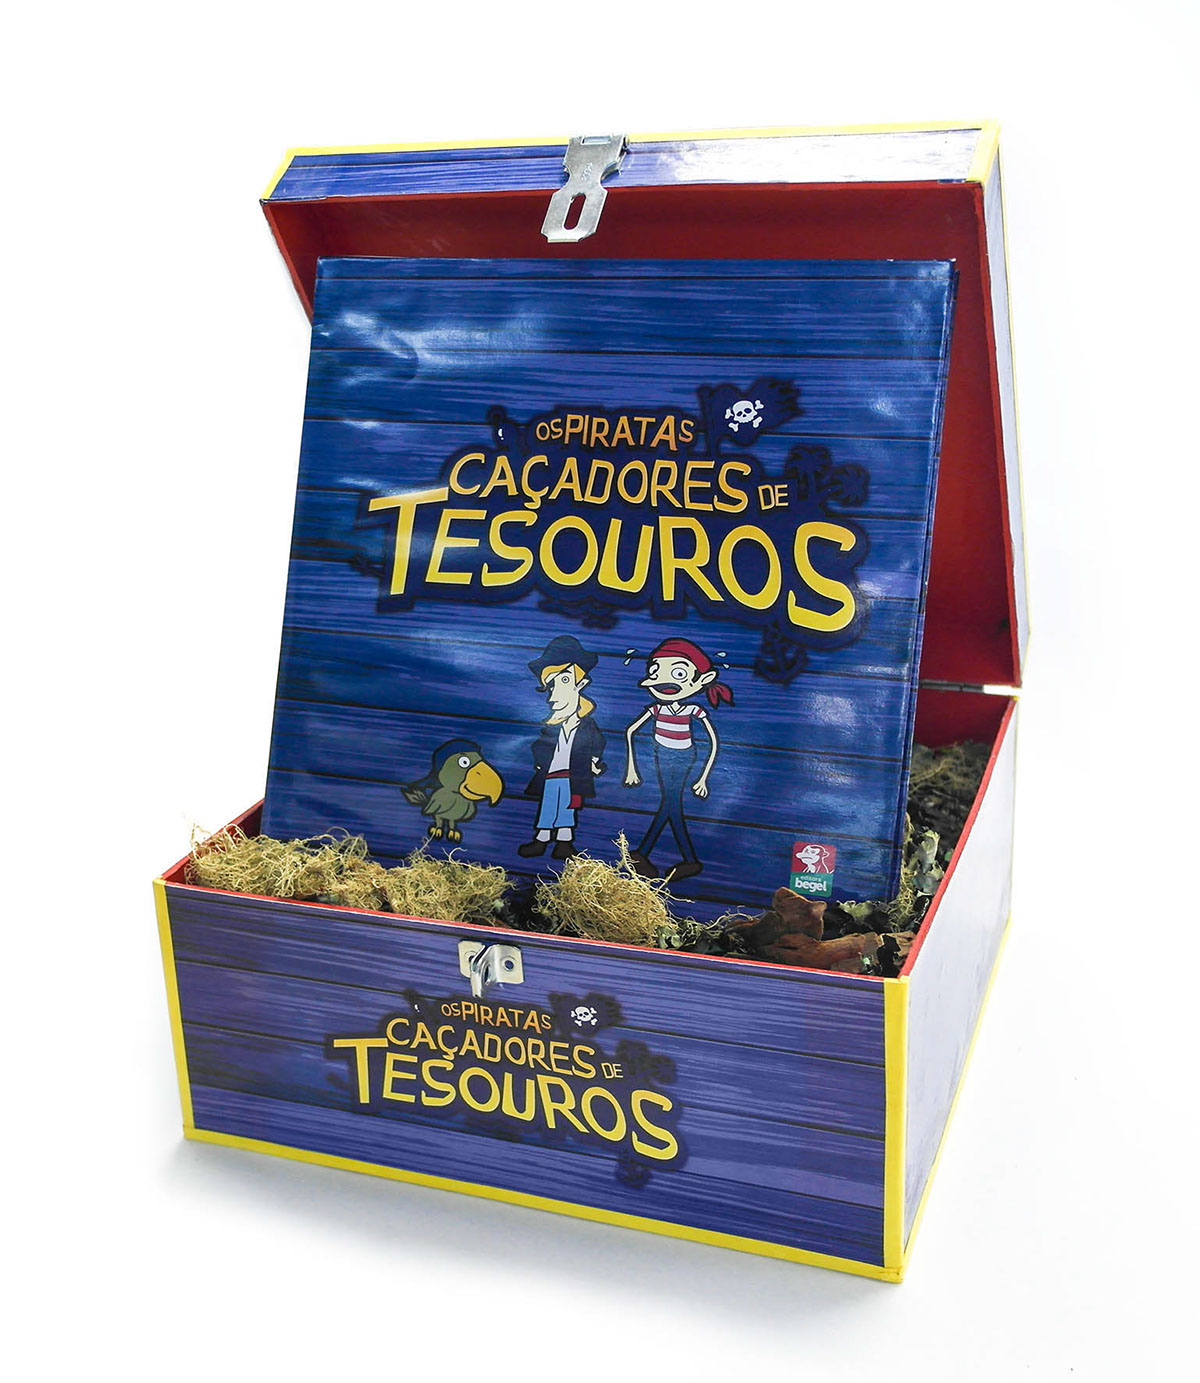 piratas marujo tesouro caçadores de tesouro treasure pirates Hunters Rangers begel Livro Popup popup book adventure